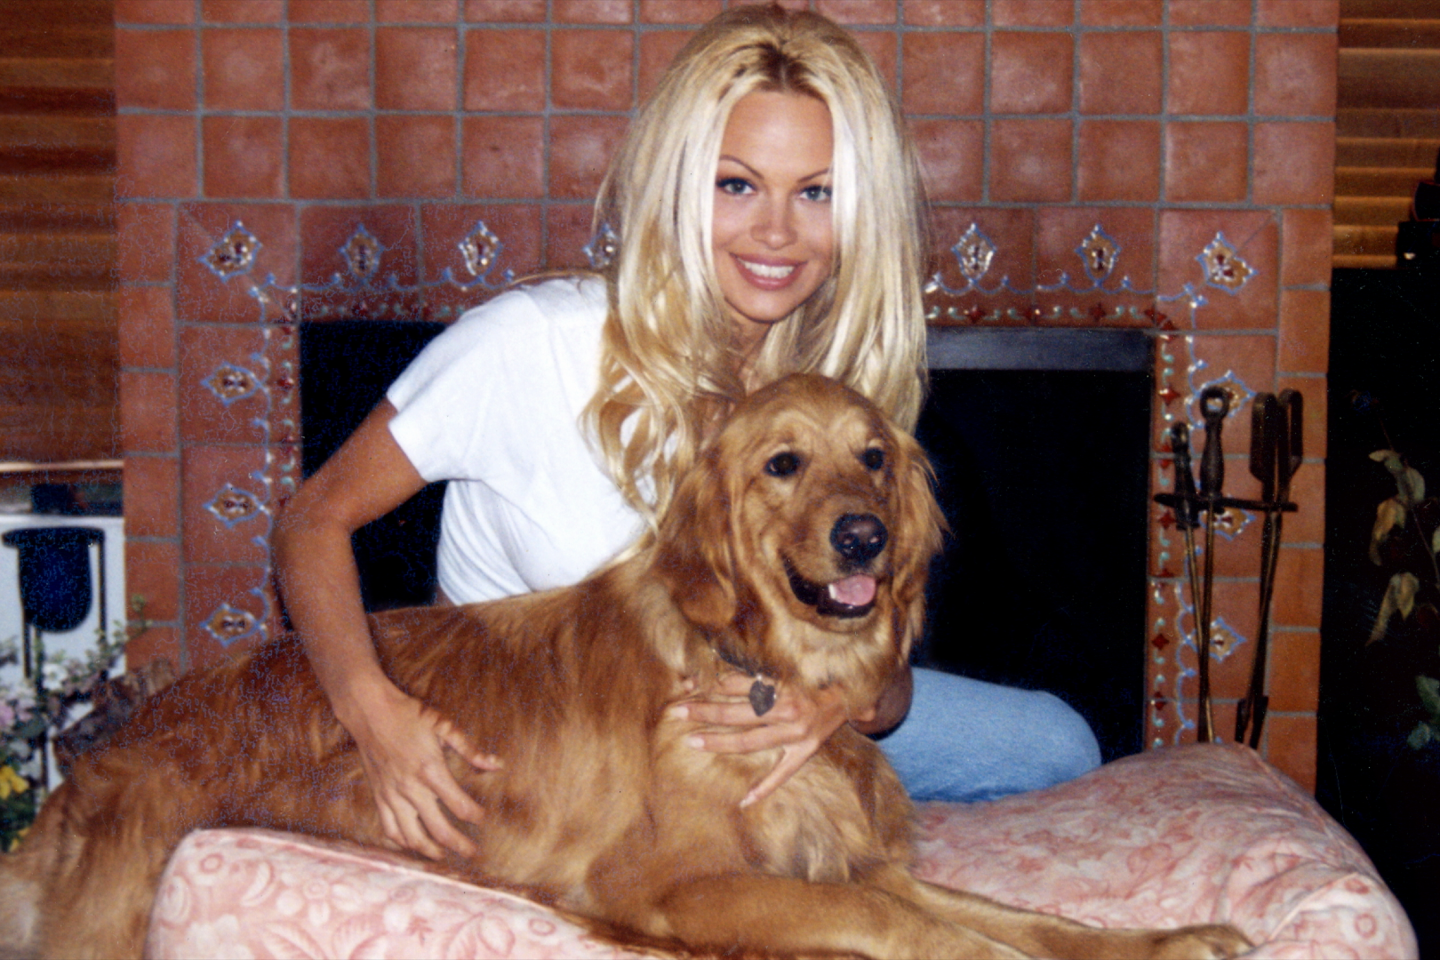 1440px x 960px - Pamela Anderson, a blonde's revenge